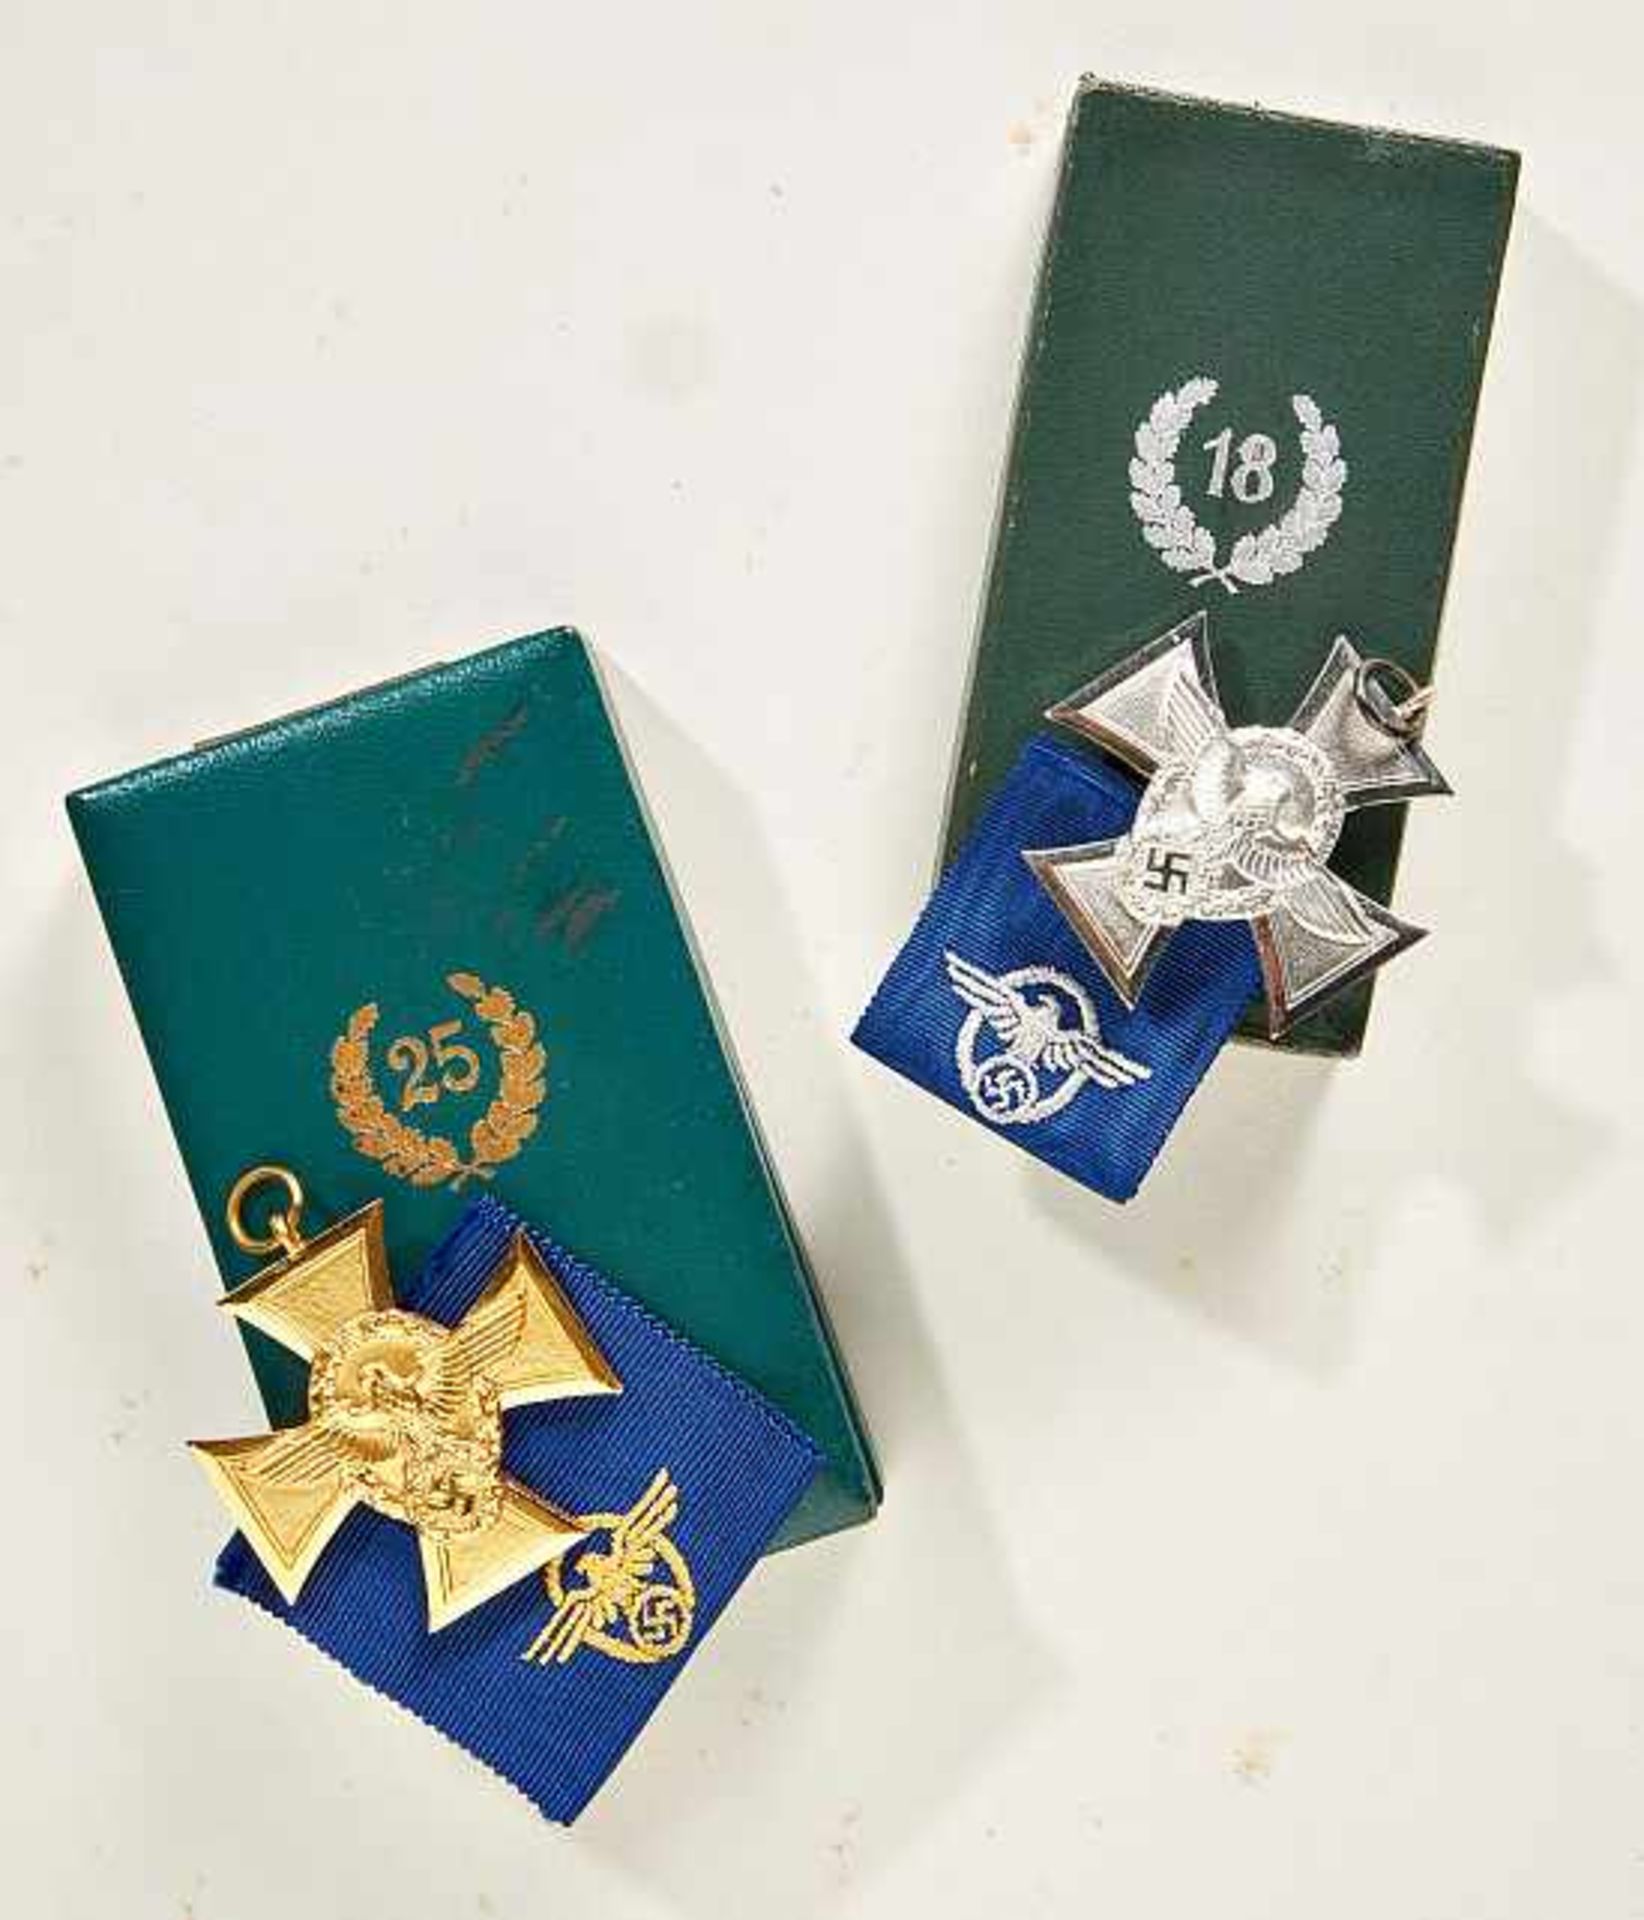 Deutsches Reich 1933 - 1945 - General Awards - Zivile Orden und Auszeichnungen : Police 25 Year